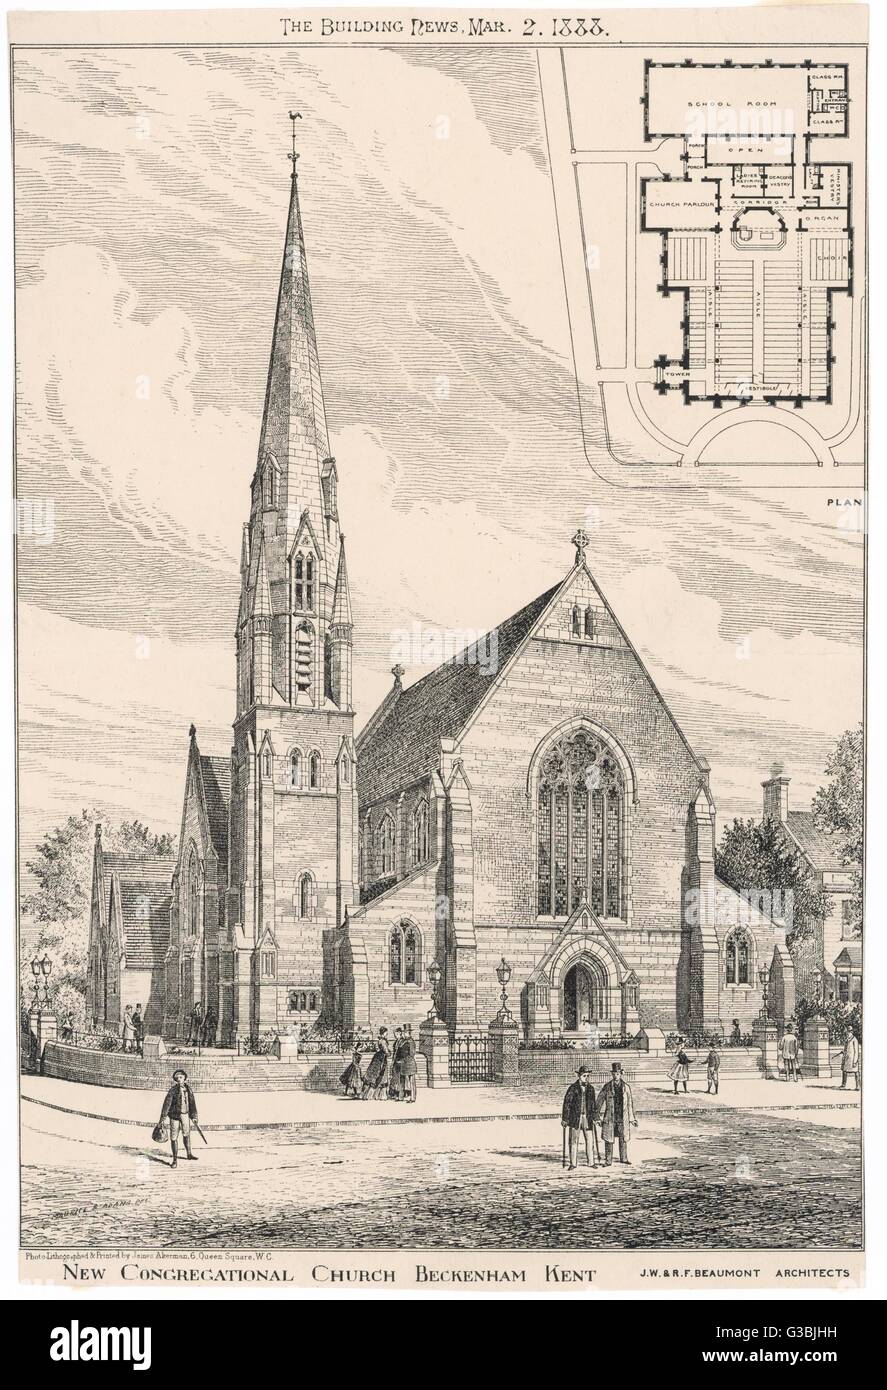 BECKENHAM CHURCH 1888 Stock Photo